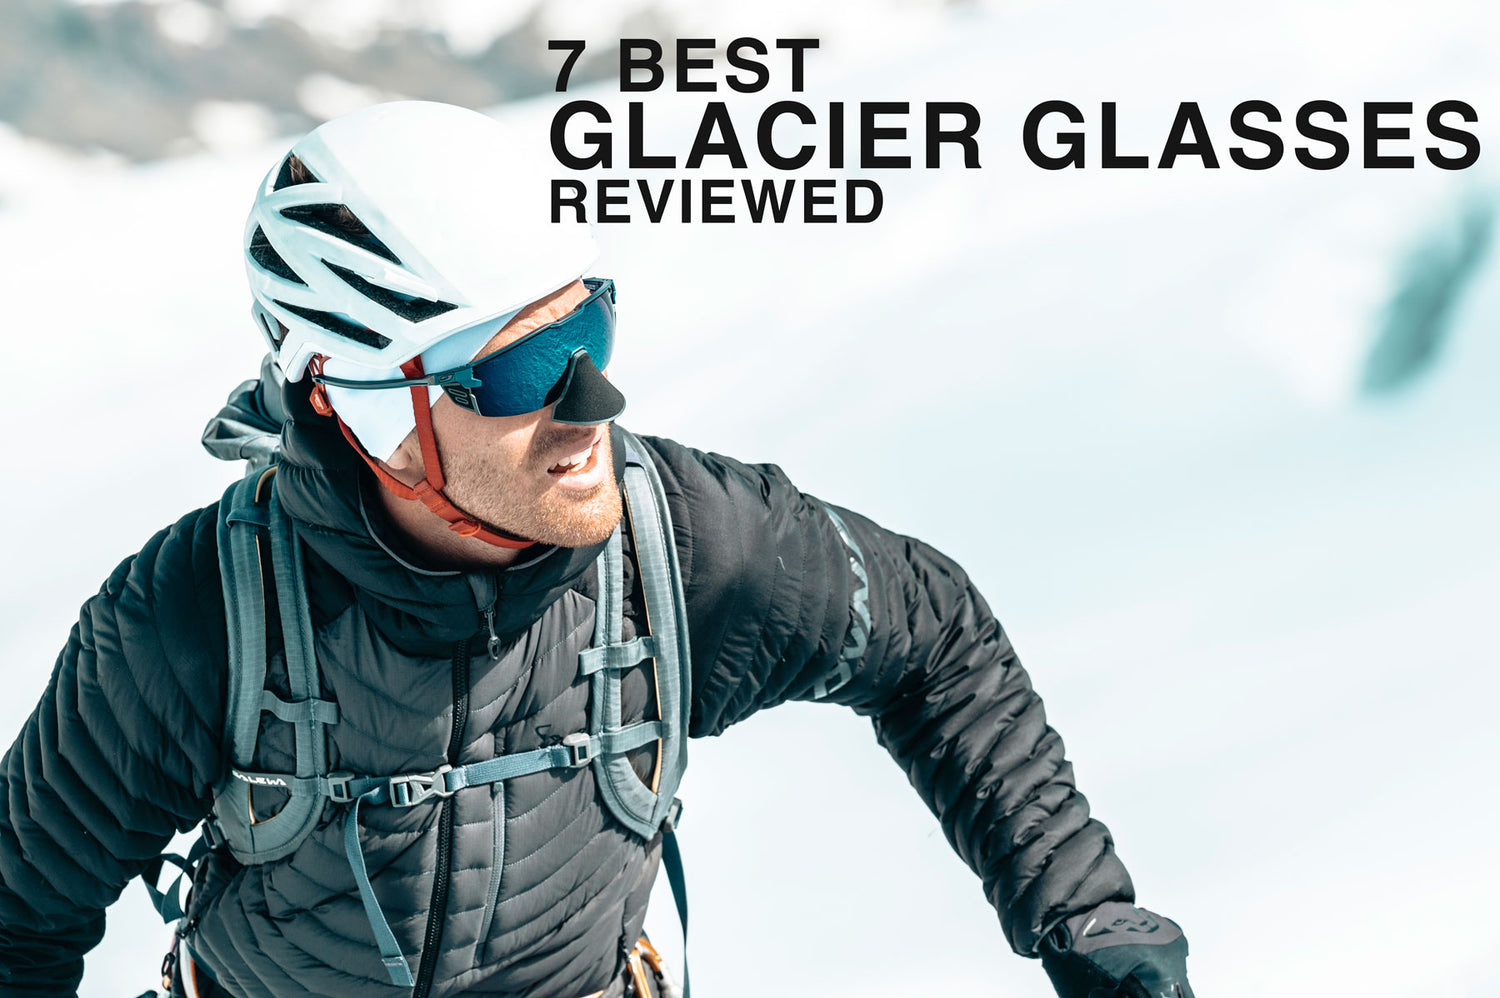 7 Best Glacier Glasses Reviewed